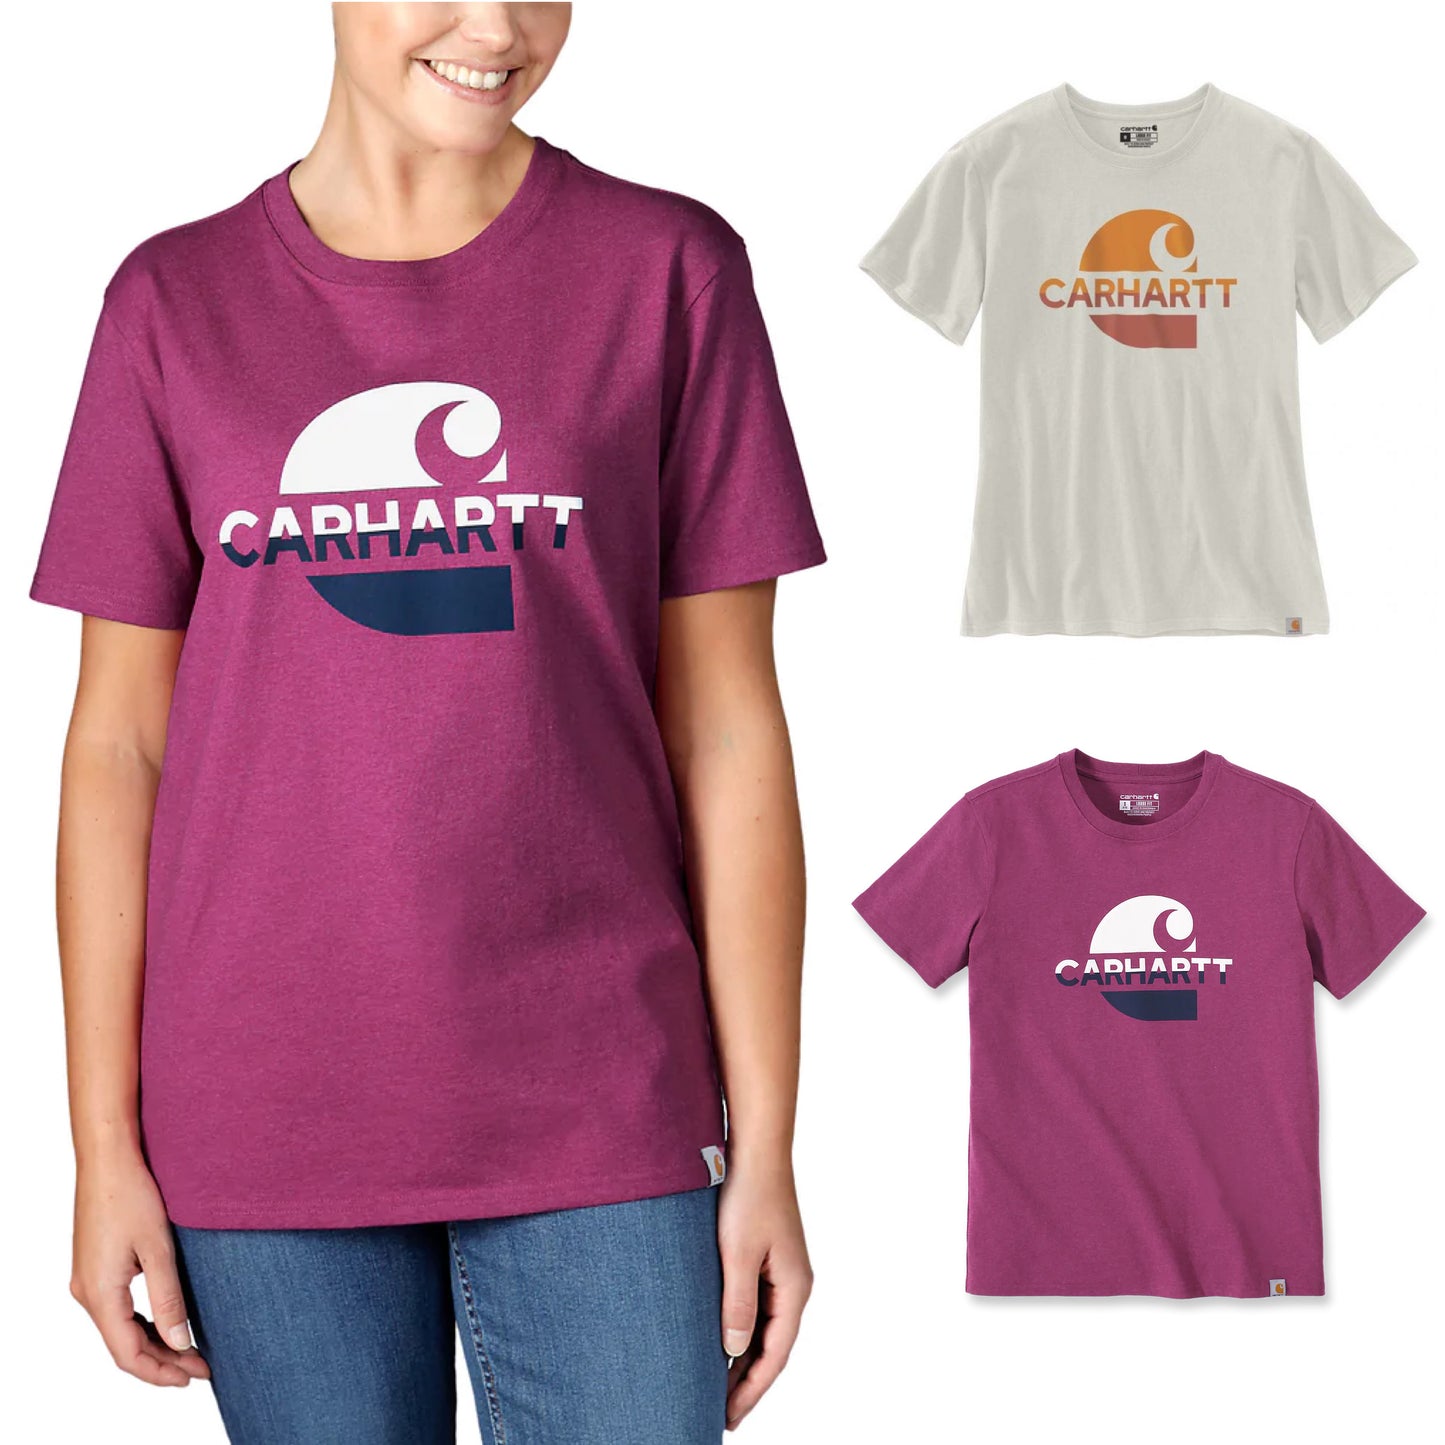 Carhartt Damen T-Shirt mit Carhartt Graphic Logo 105738